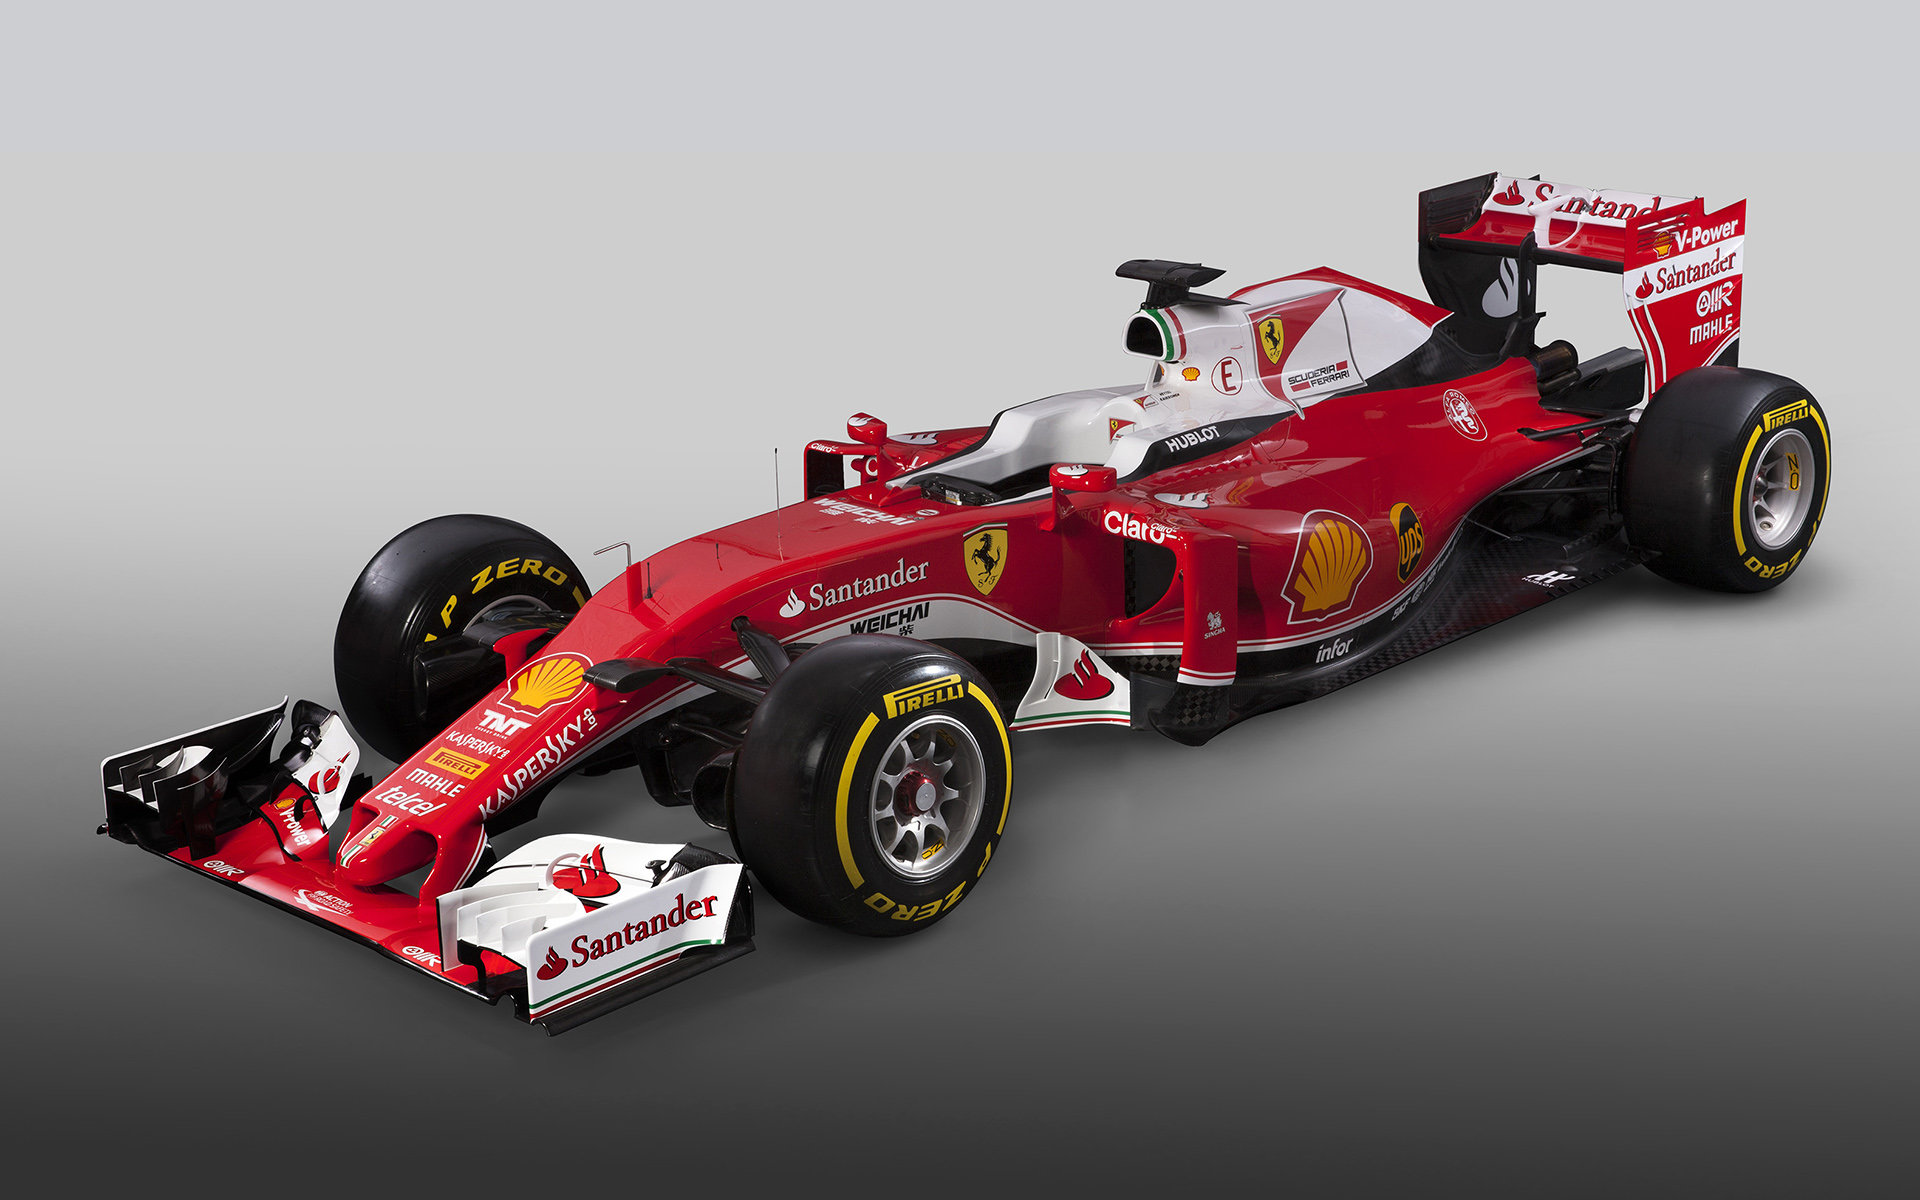 Představení nového vozu Ferrari SF16-H